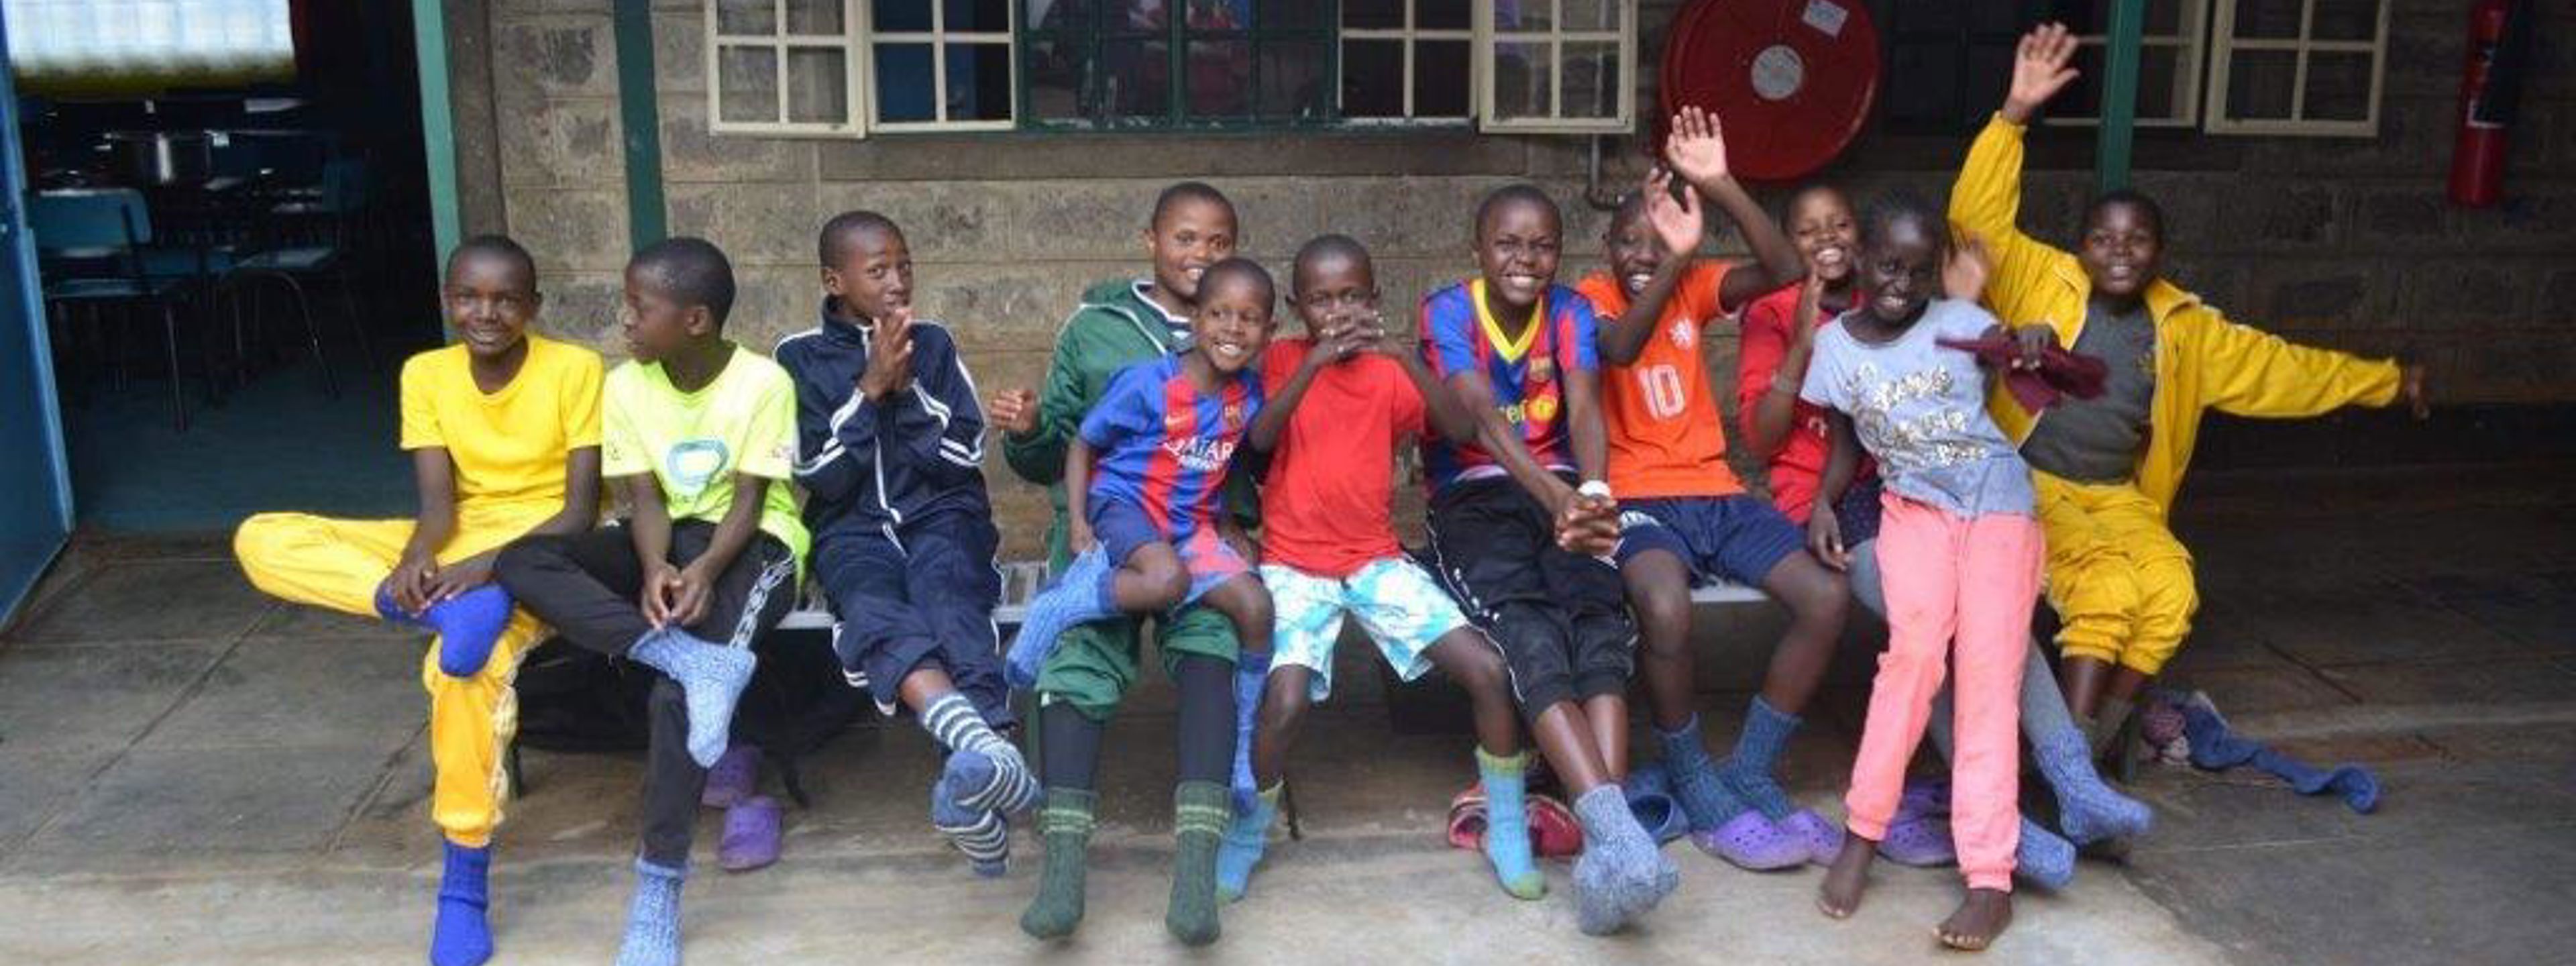 Fleire kenyanske barn sit på ein benk. Barna tuller og ler med kvarandre.